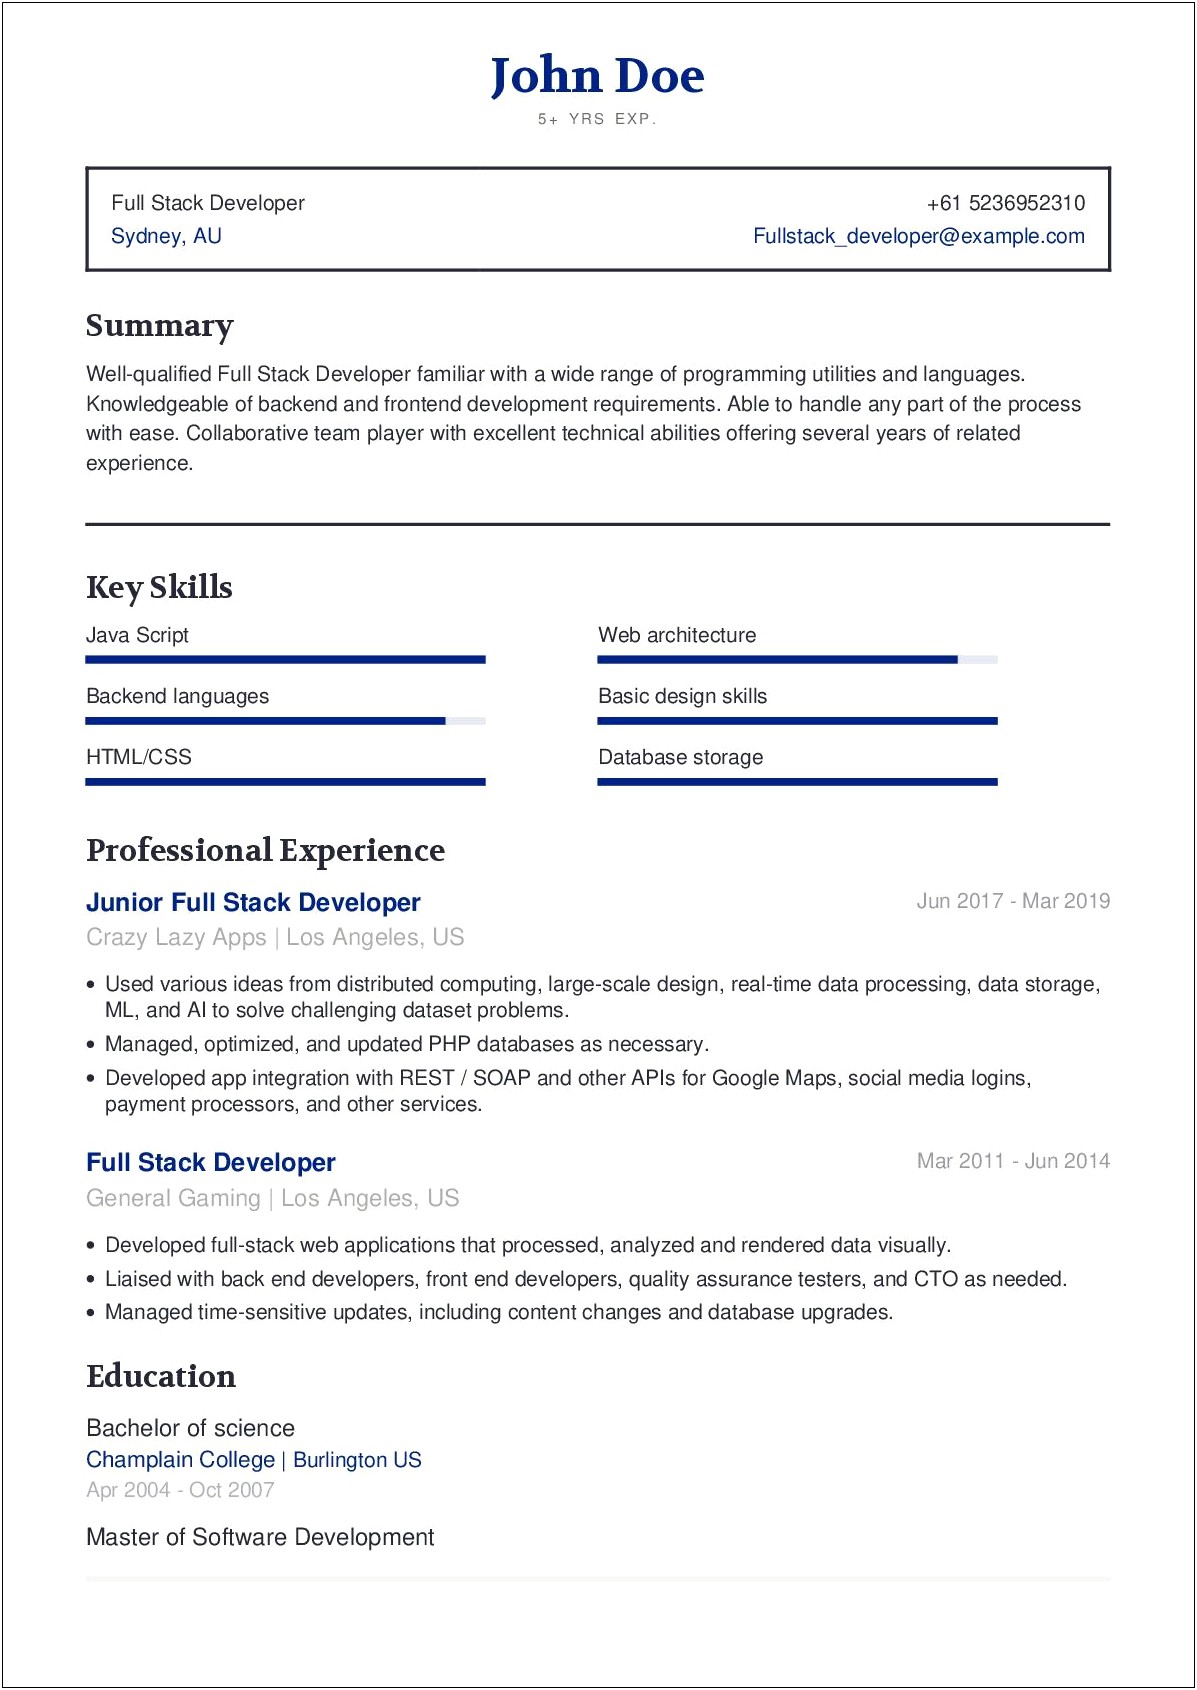 Resume Profile Examples Full Stack Developer